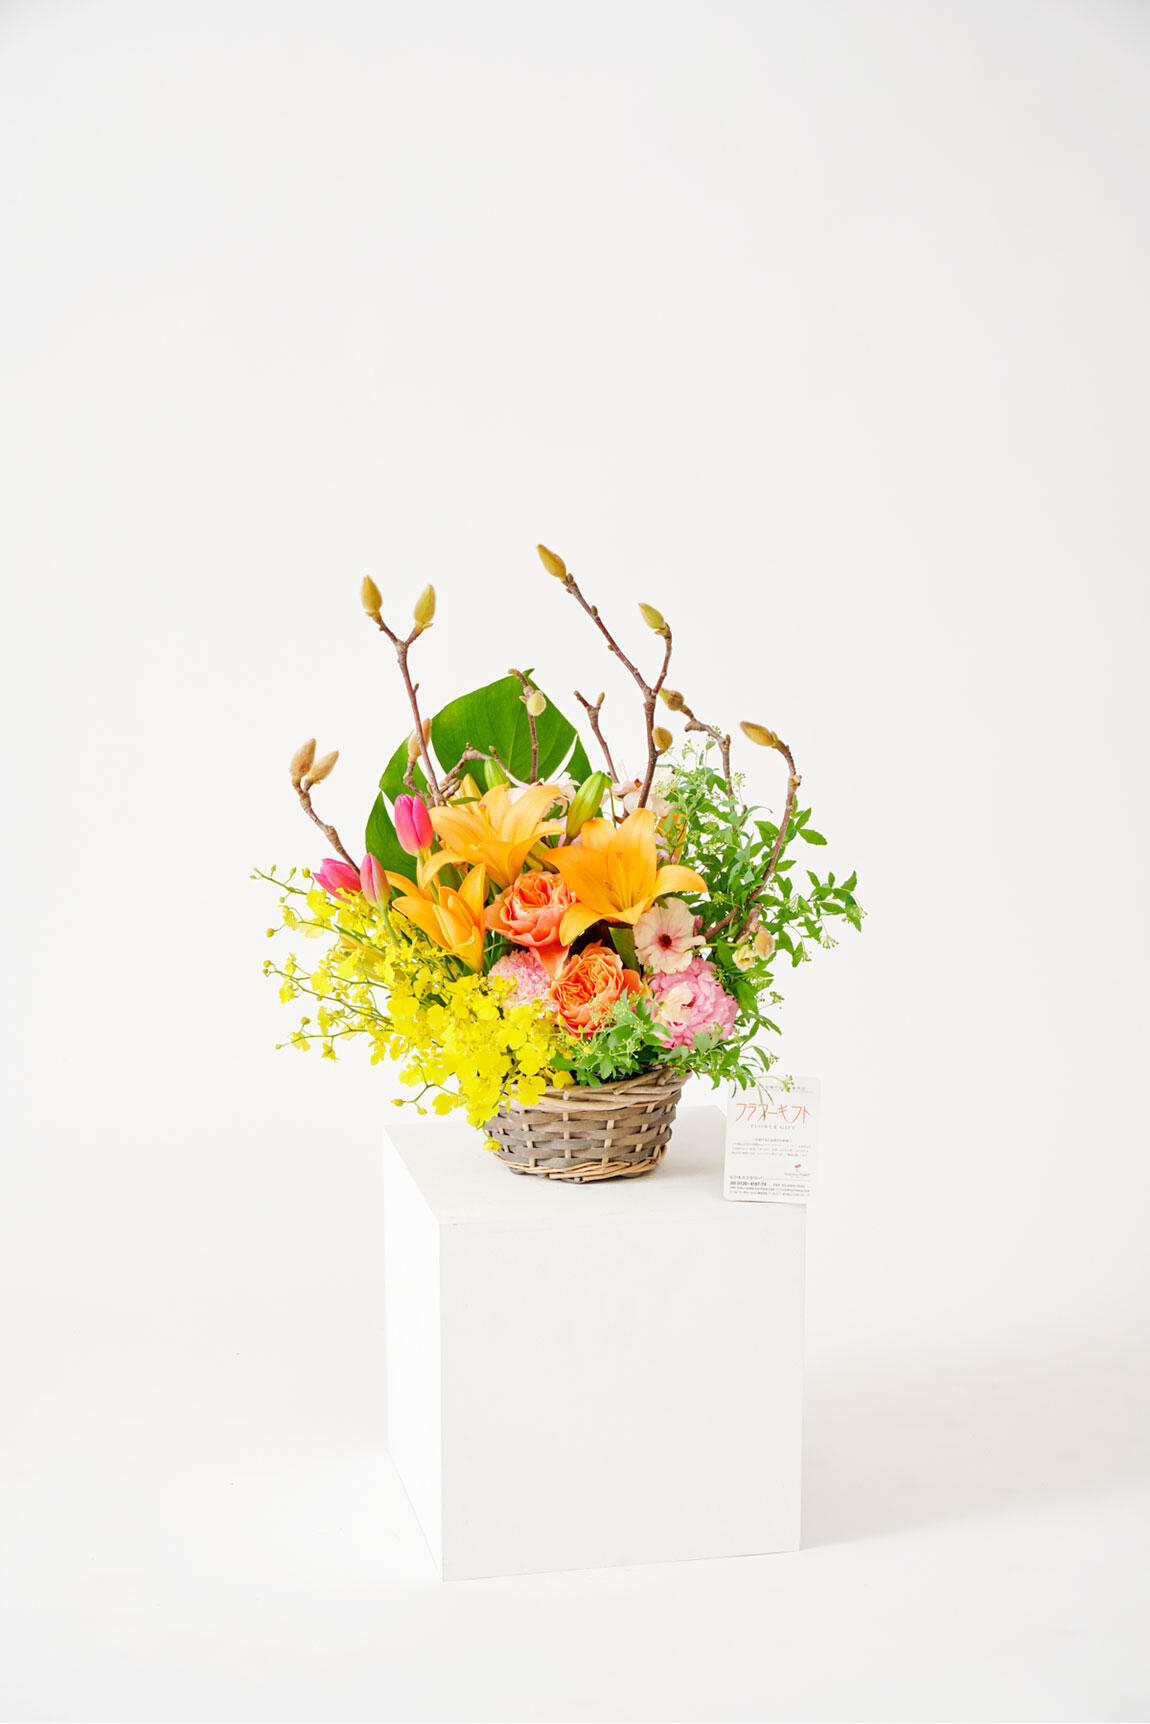 <p>木蓮（モクレン）のアレンジメントフラワーは3月までの春限定のお祝い花ですので、春の開店祝い、開業祝い、移転祝い、開院祝いなどのお祝い花にいかがでしょうか。</p>